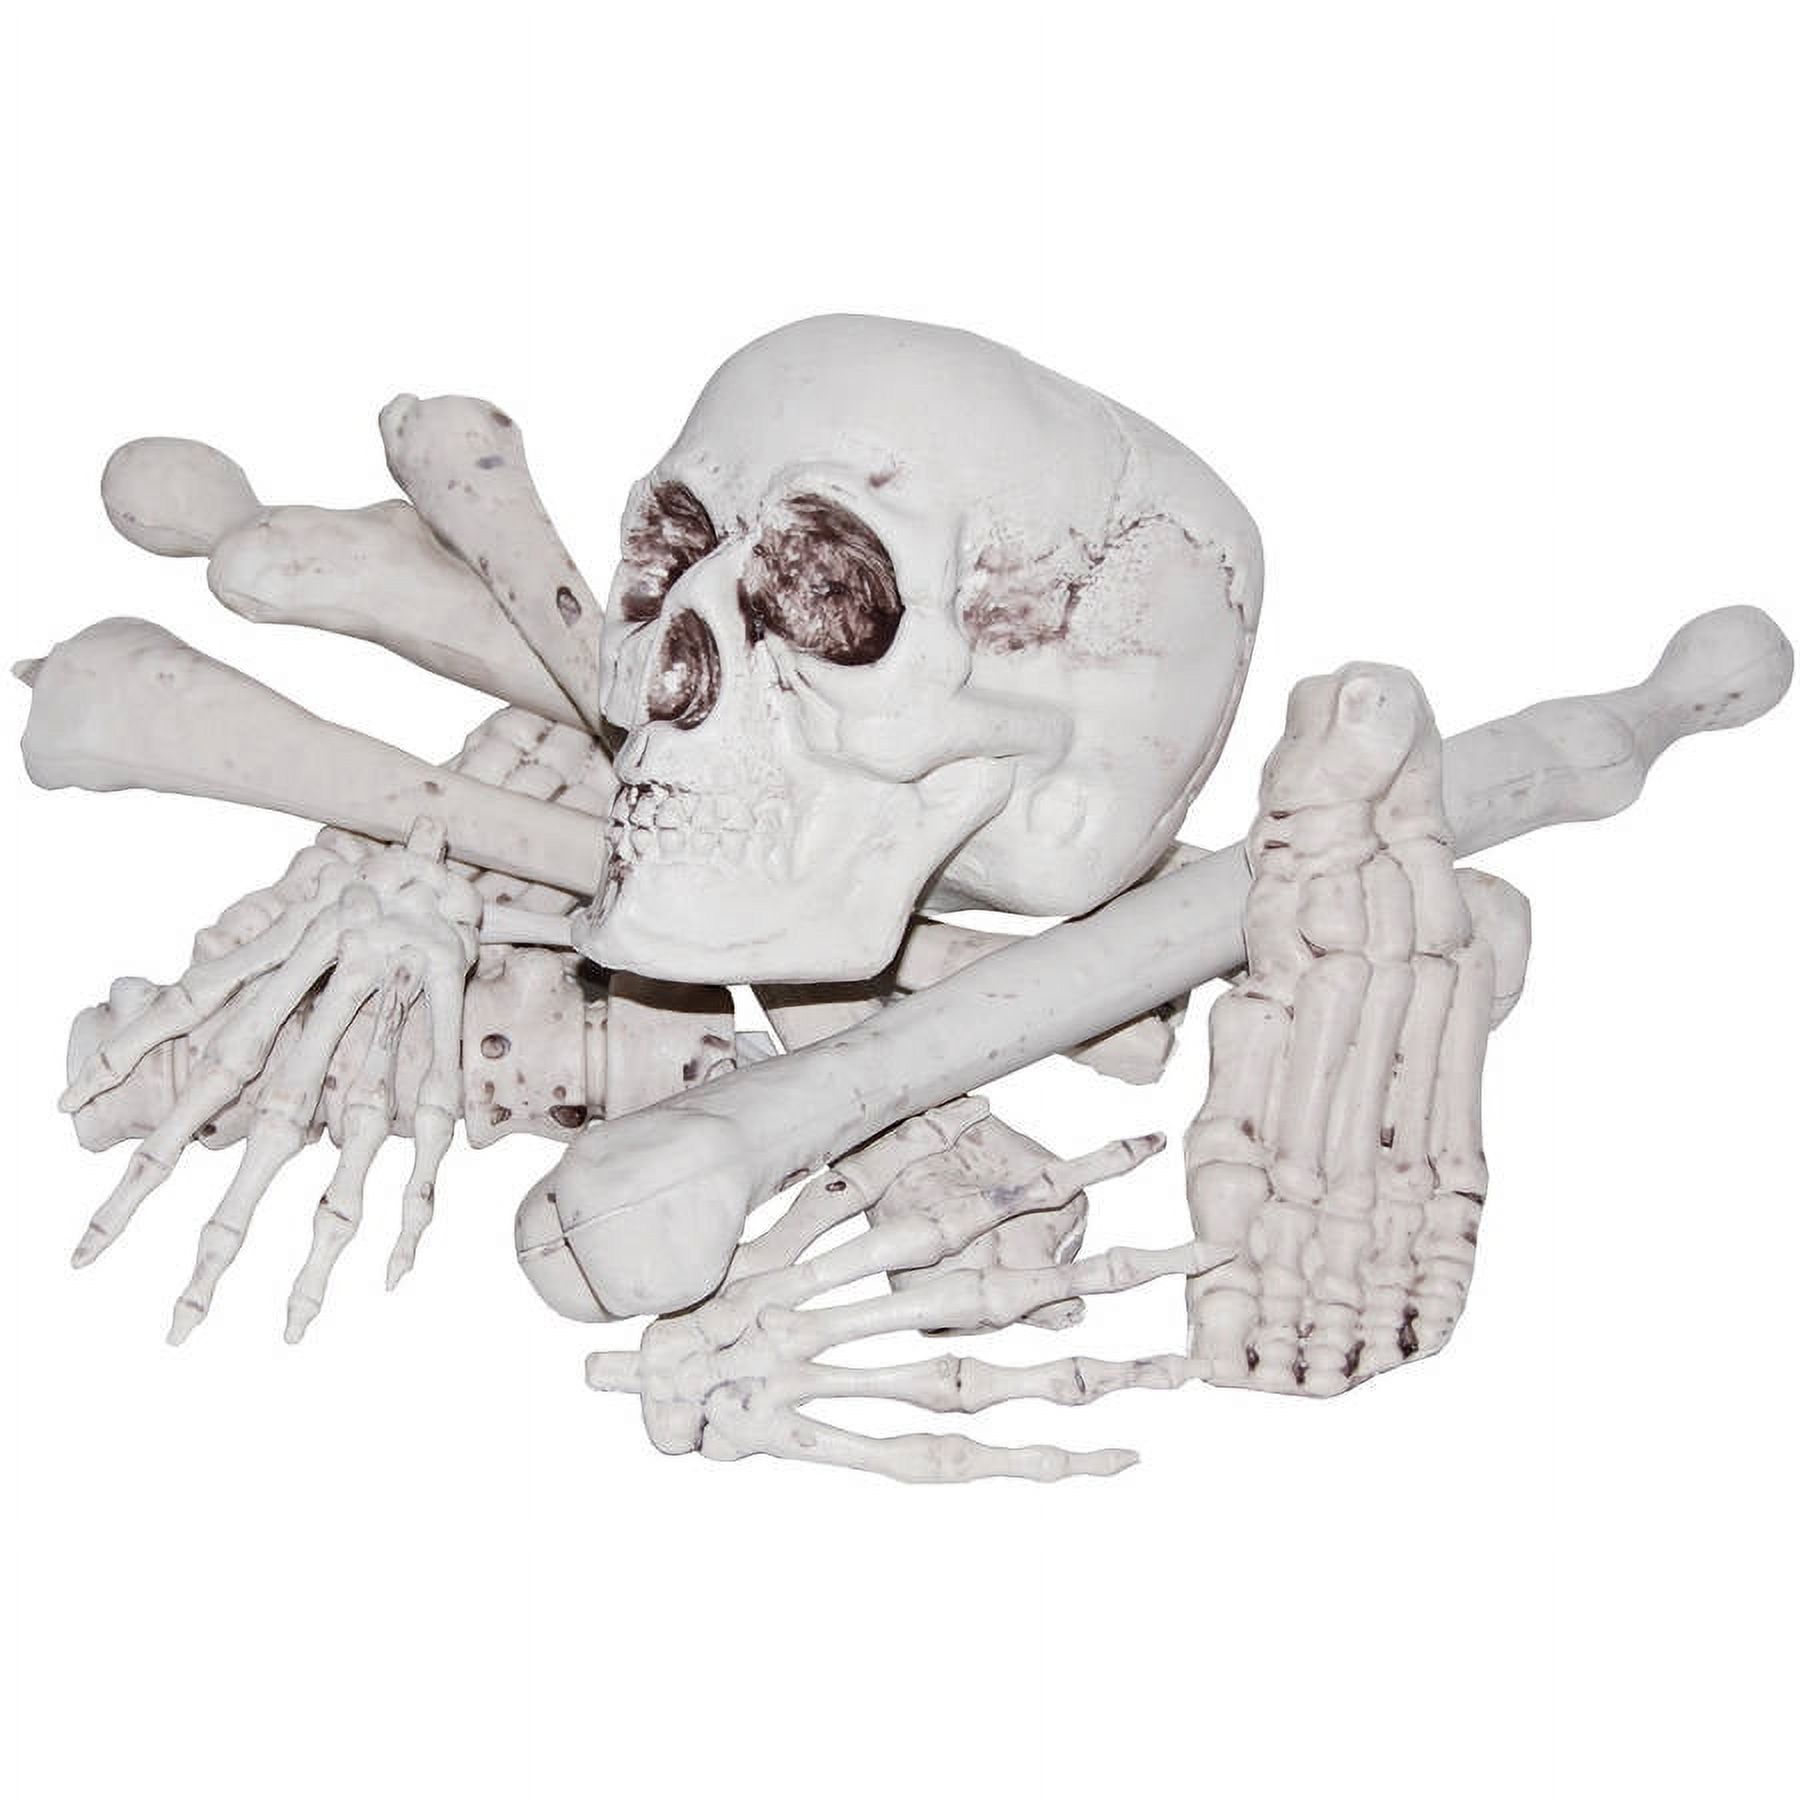 Morris Costumes Bag of Bones - image 1 of 2